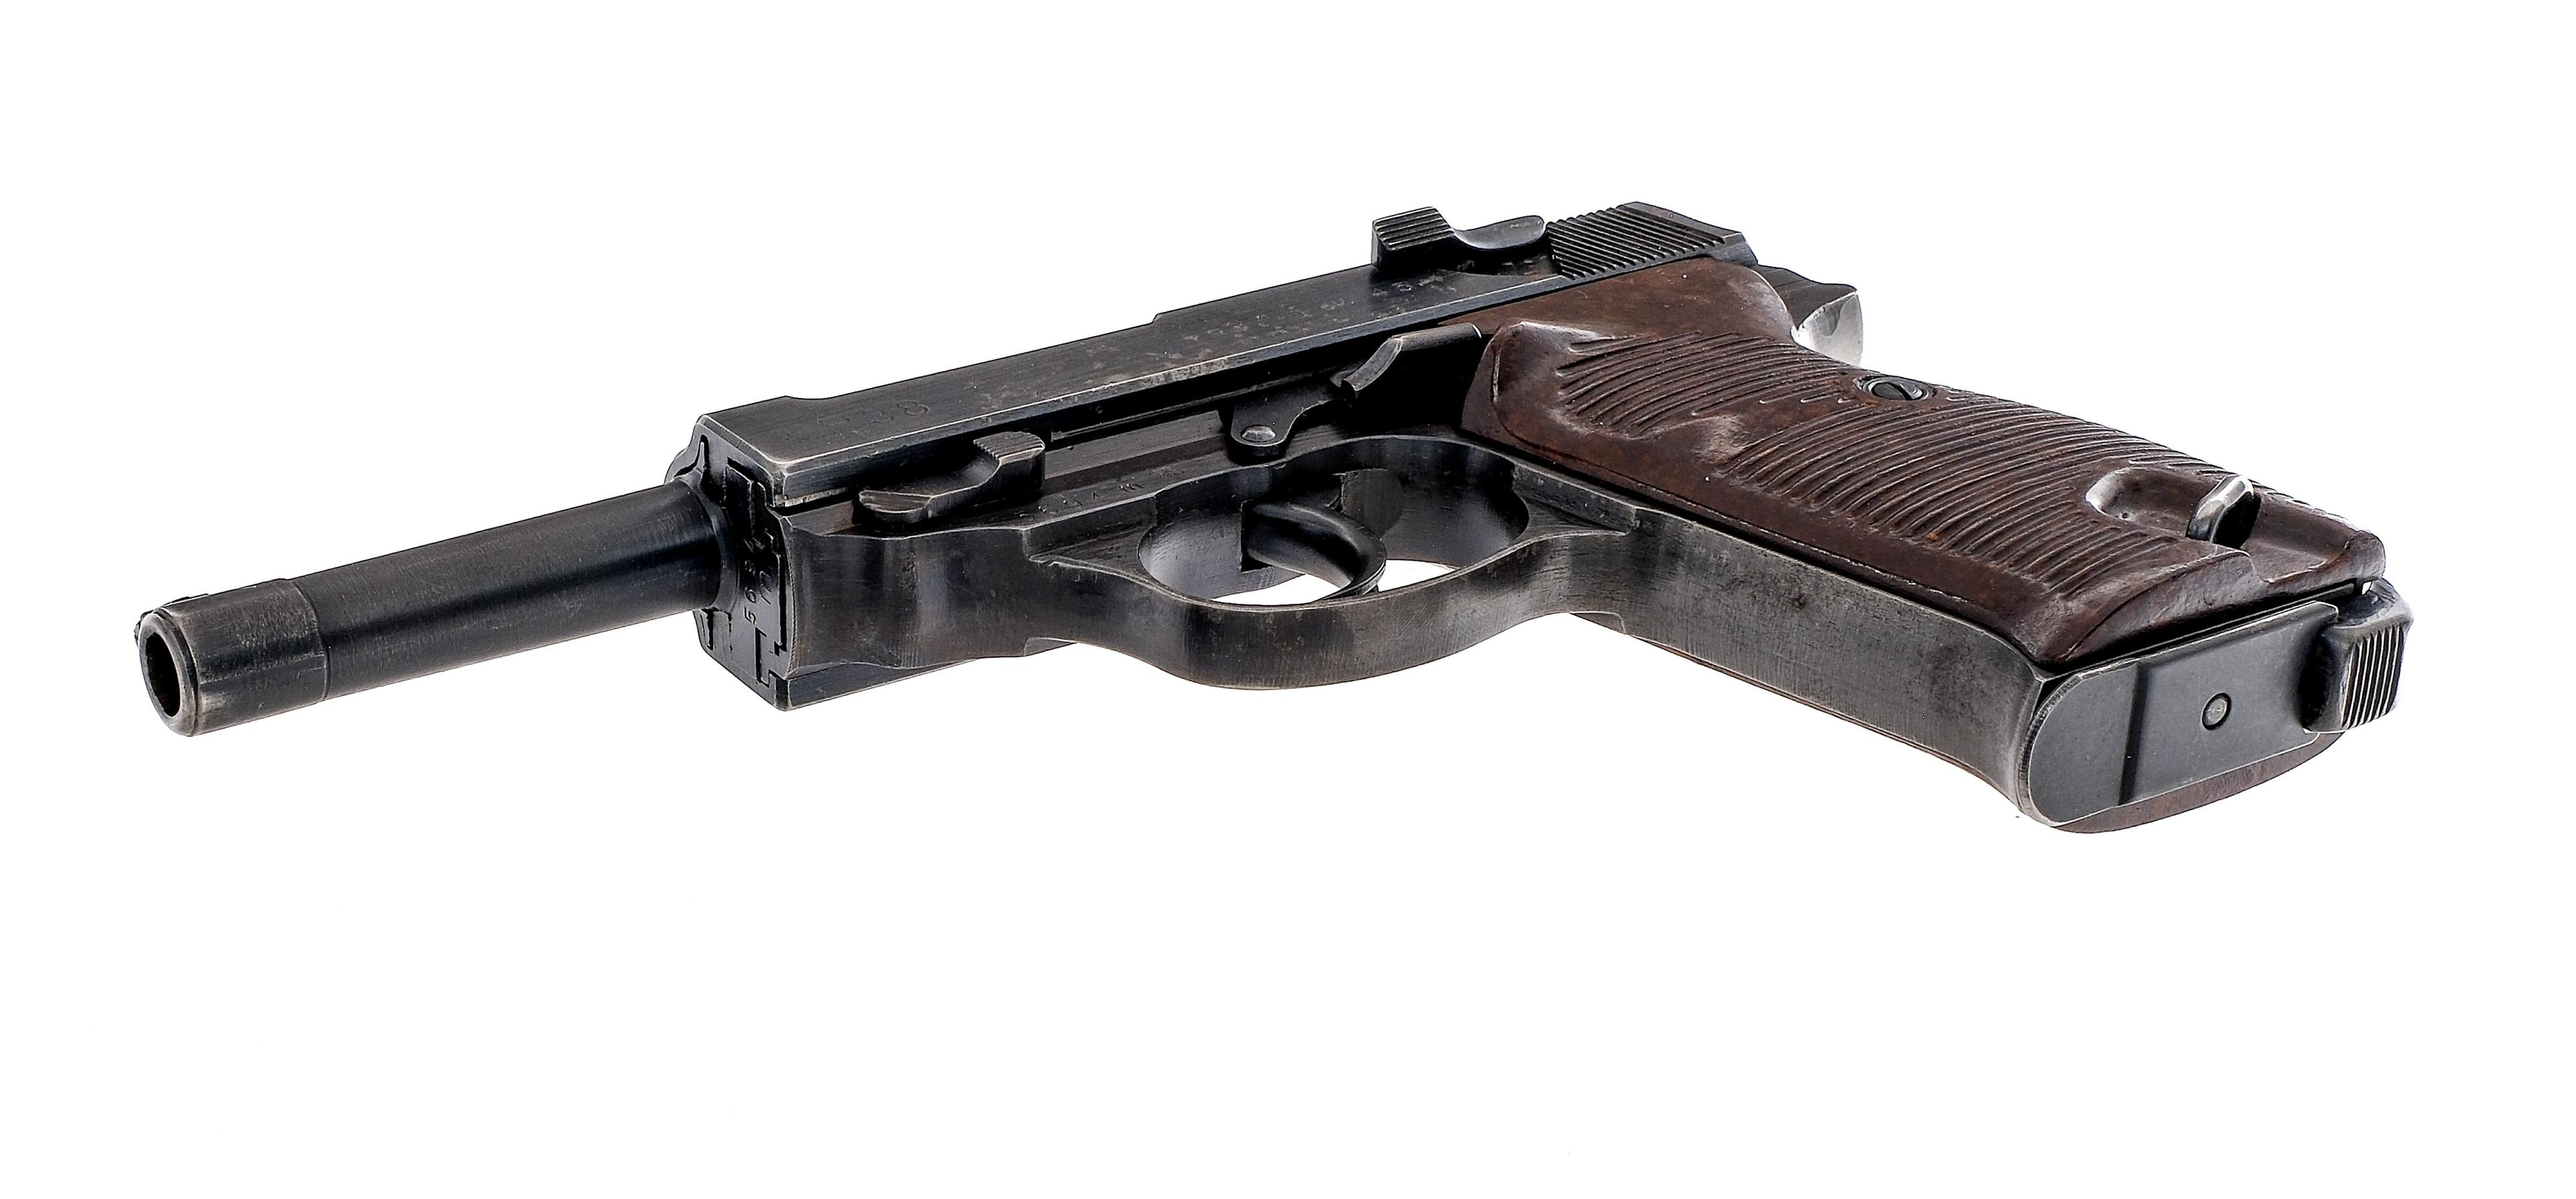 Walther P38 9mm Semi Auto Pistol